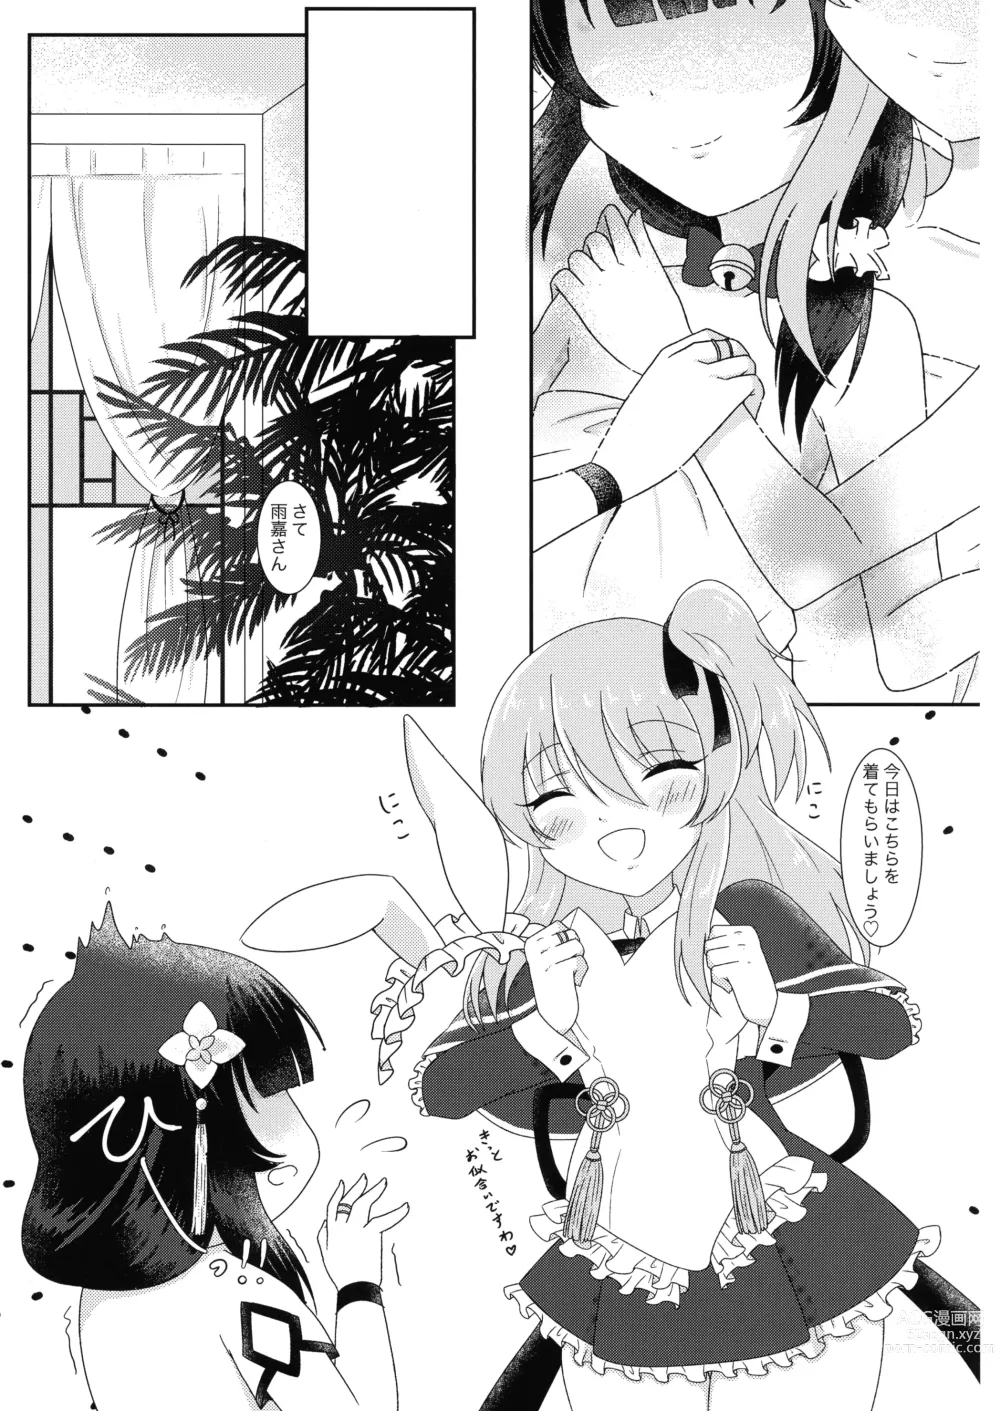 Page 21 of doujinshi Kijo kara Shika sesshu Dekinai Eiyou ga Aru